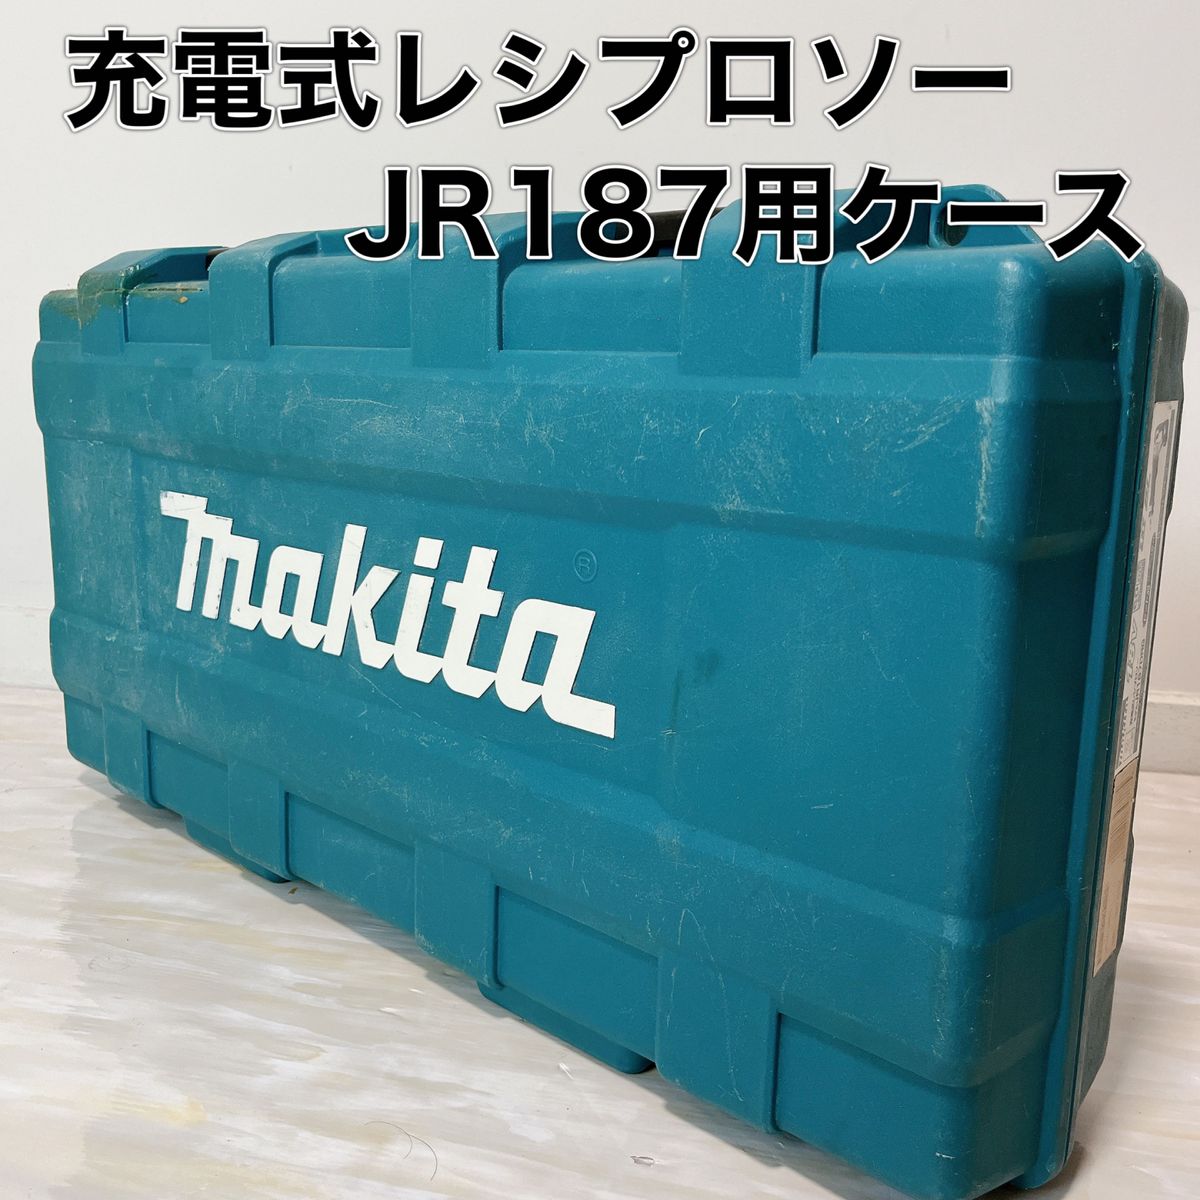 マキタ Makita 充電式 レシプロソー JR187 ケースのみ